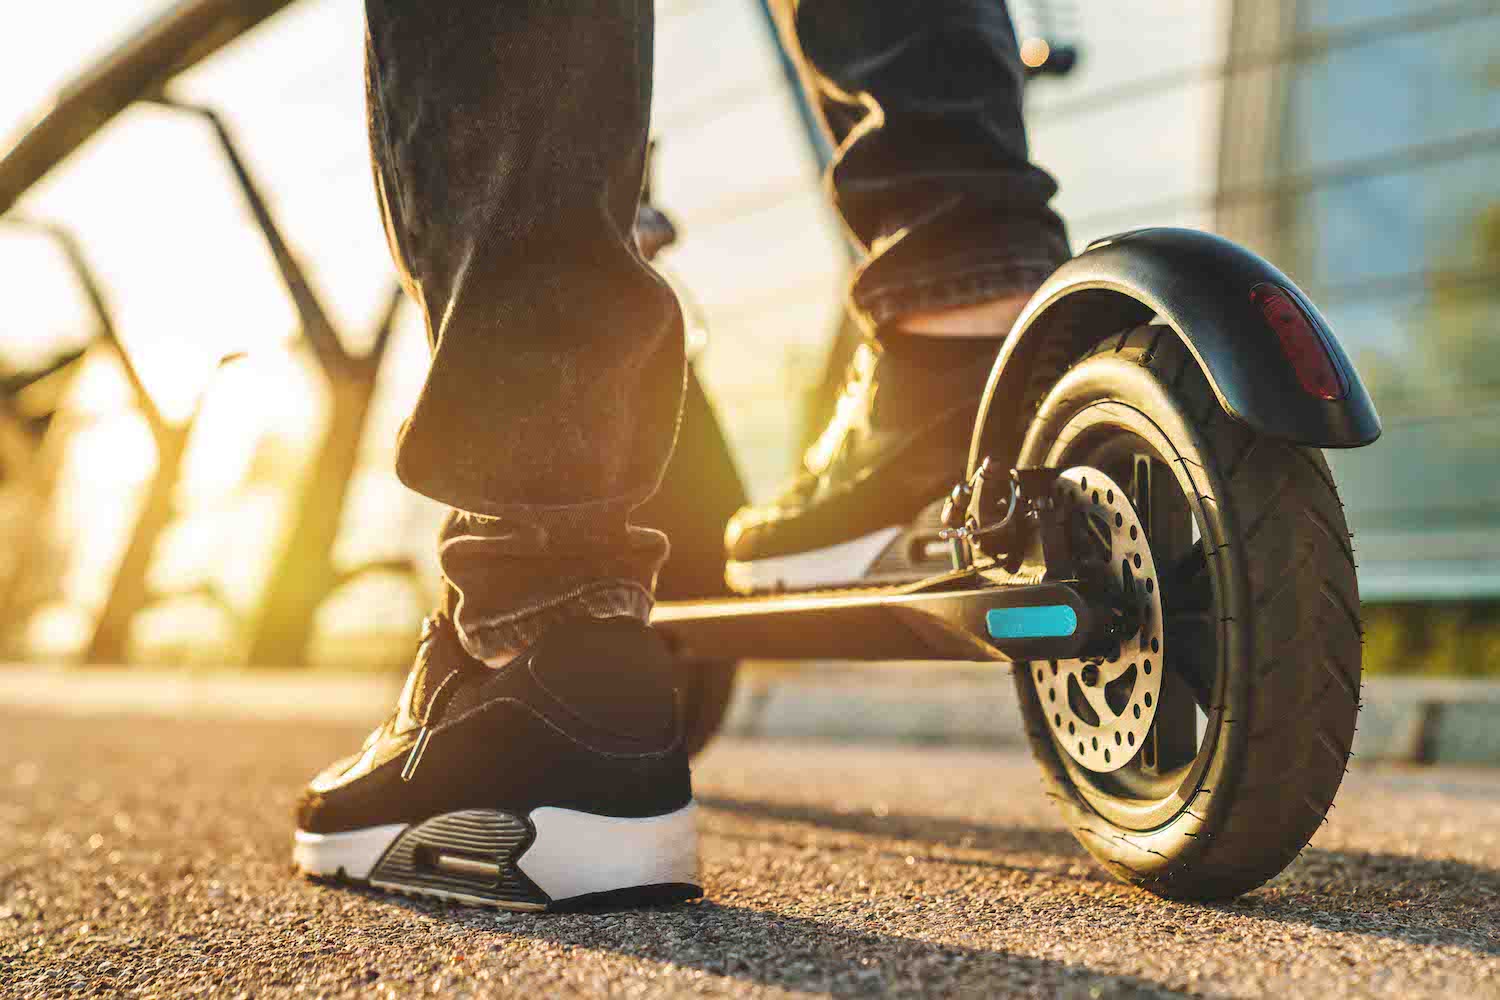 Car News | Government legislates for e-scooter use | CompleteCar.ie